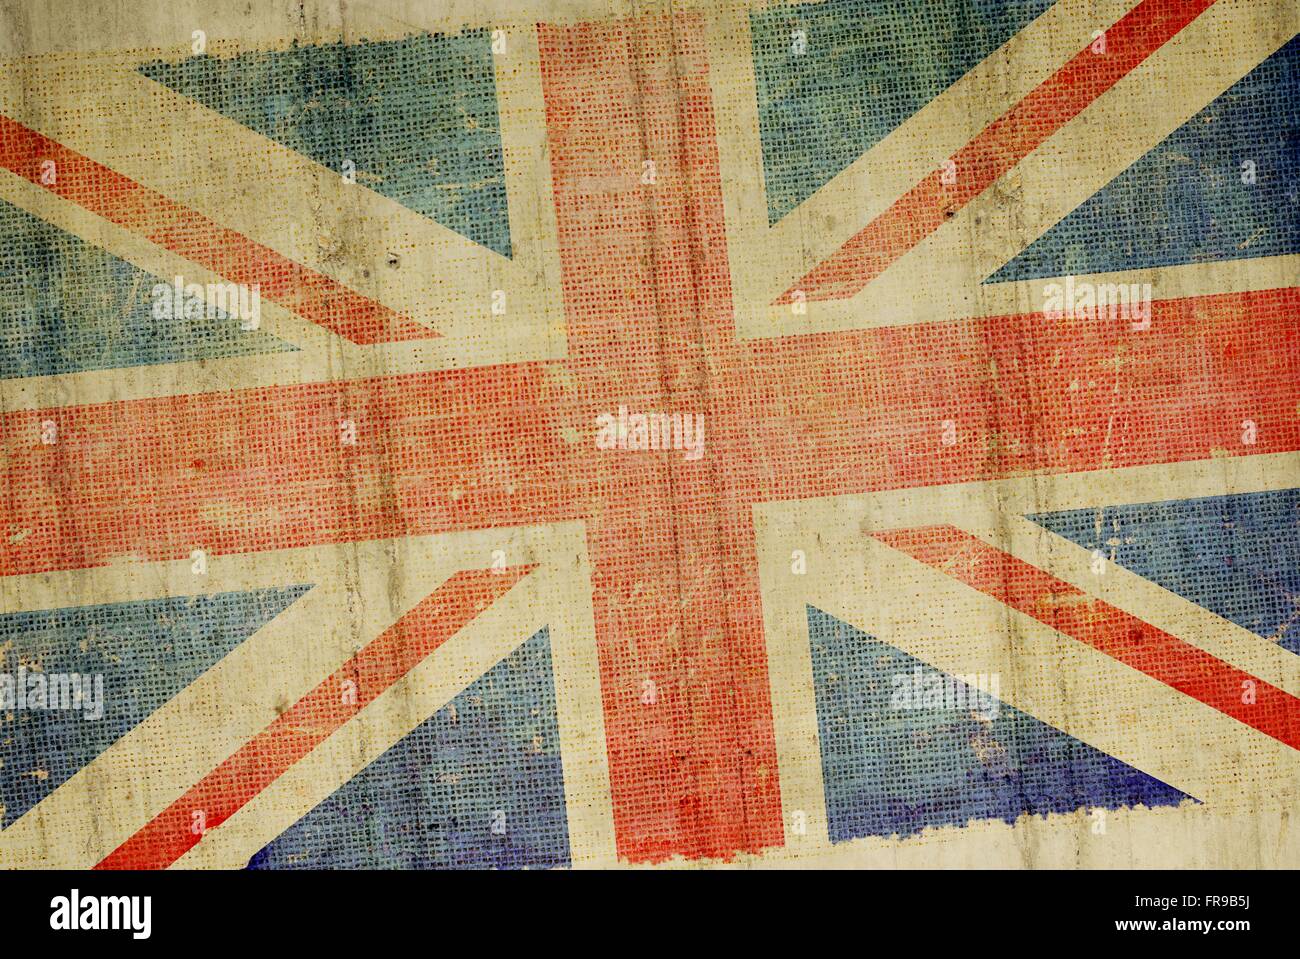 Grunge Concrete Wall United Kingdom Flag Background Illustration. British Flag Backdrop. Stock Photo